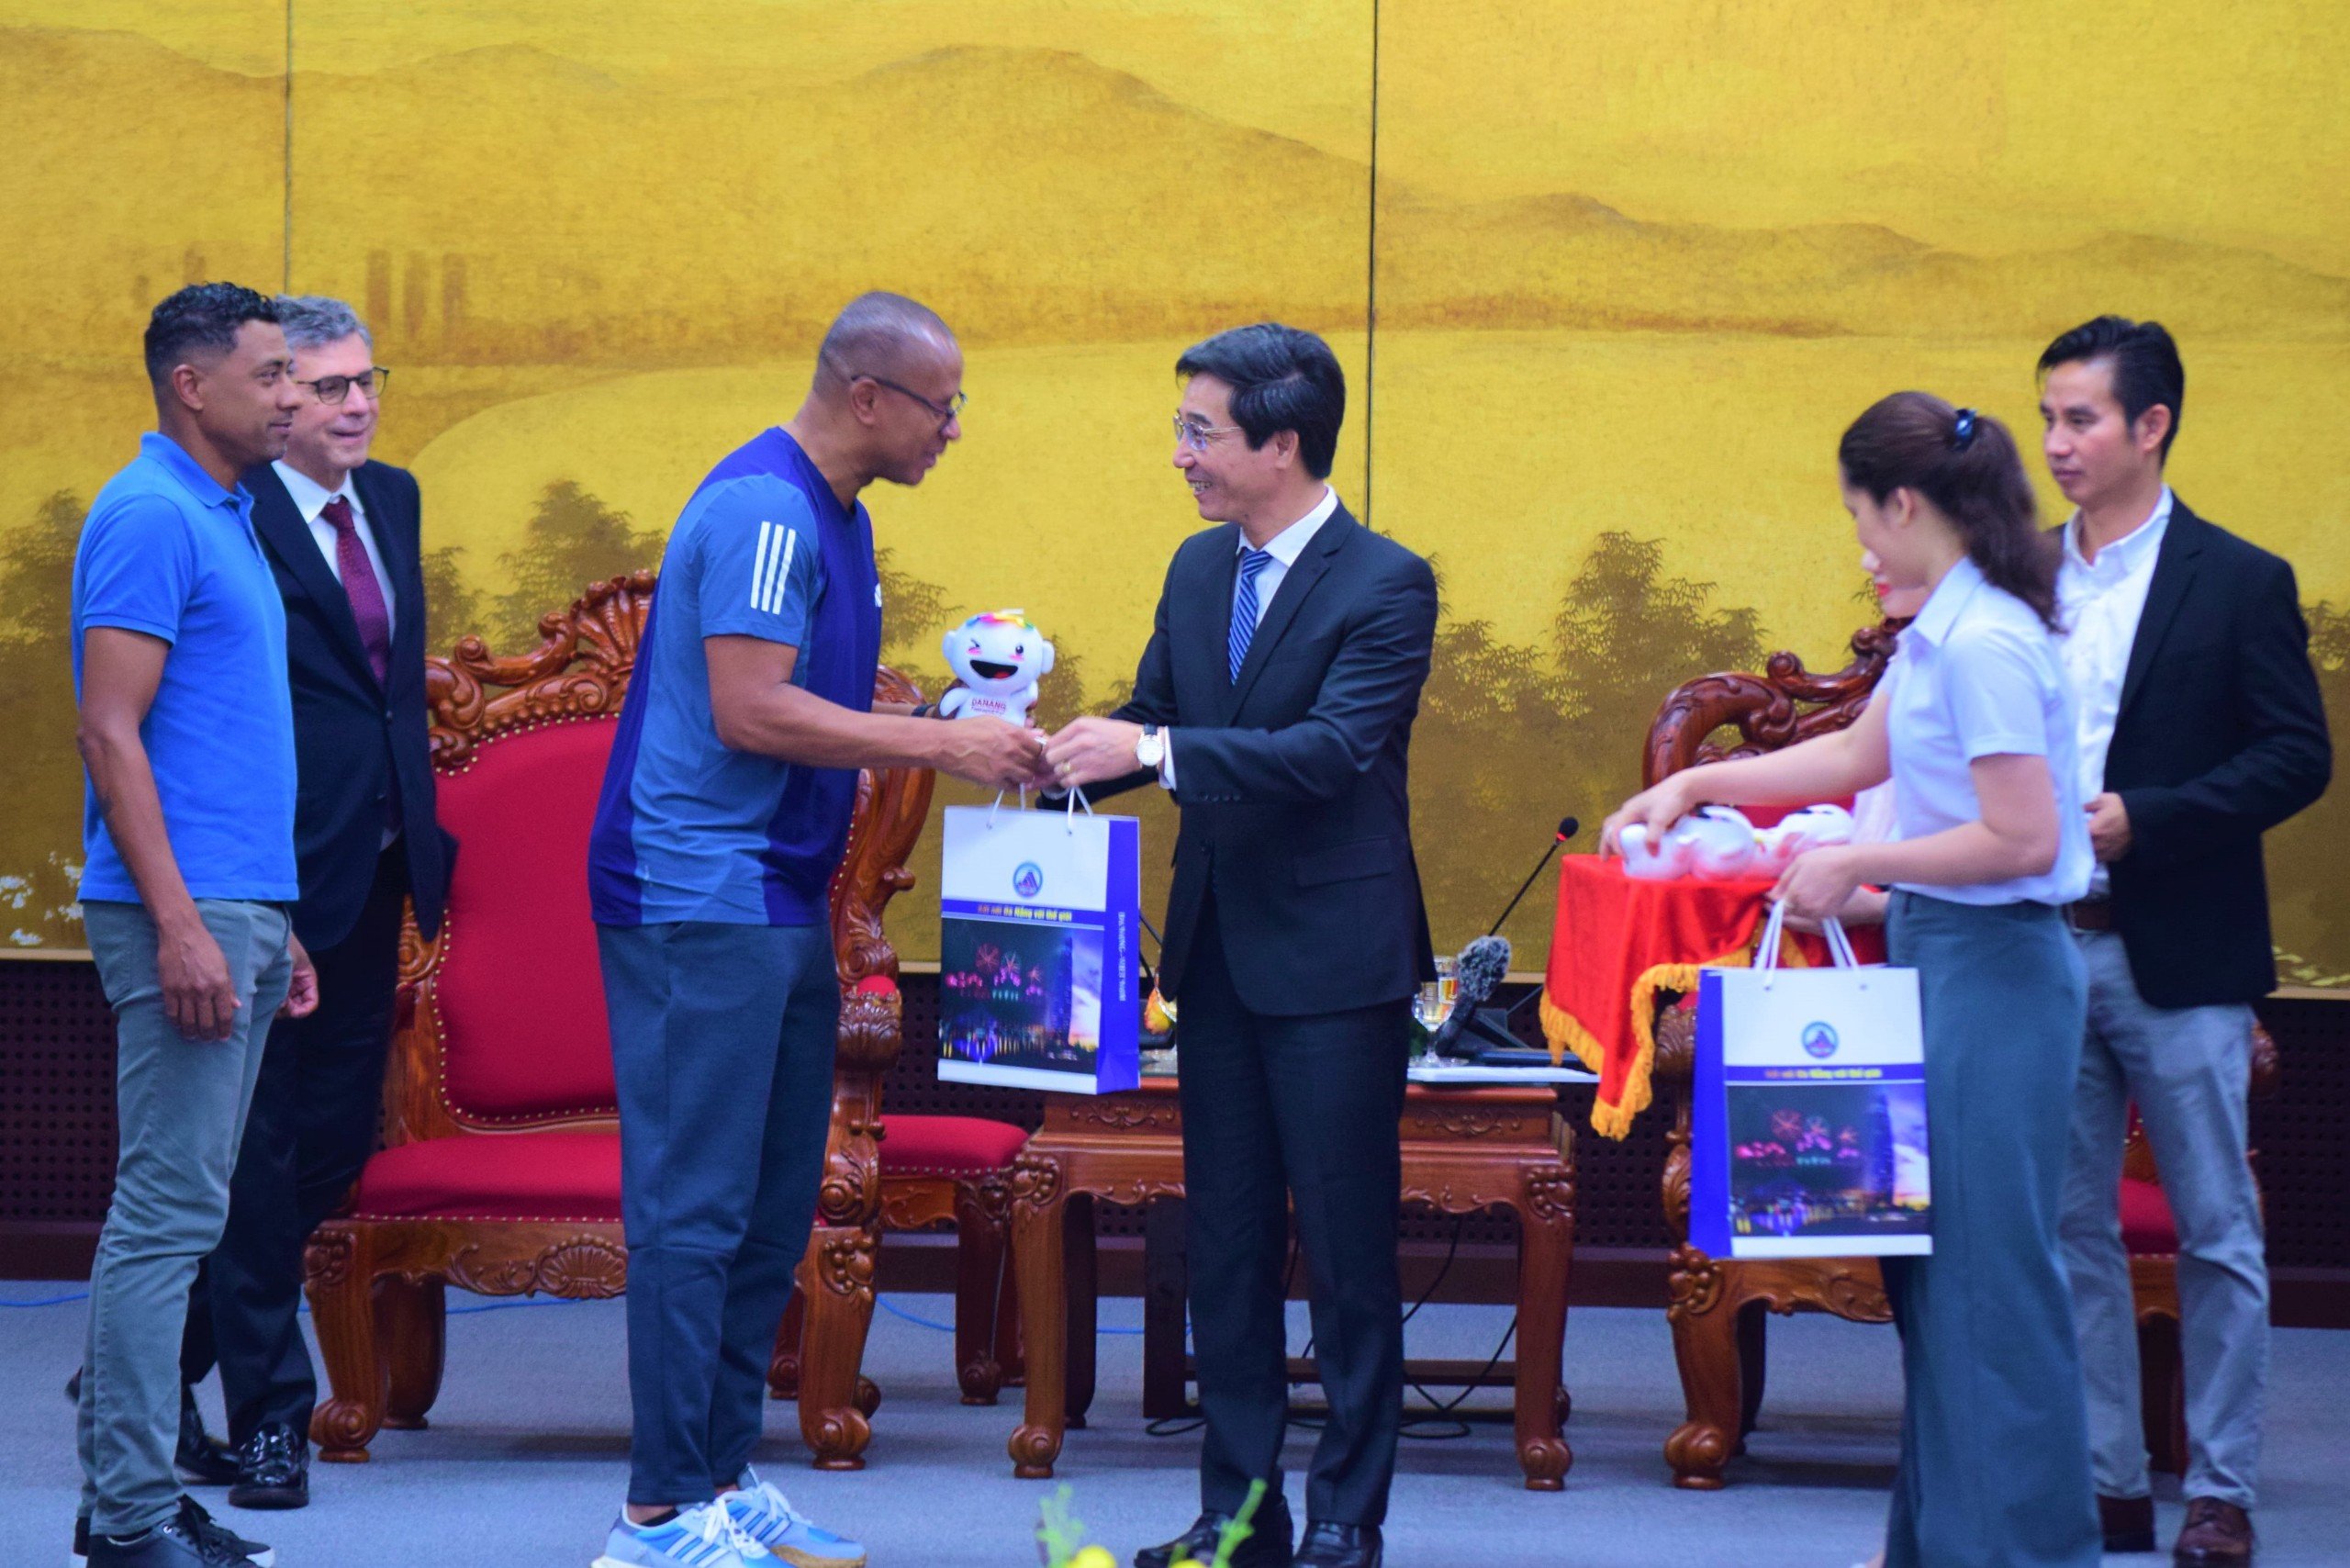 Руководители города Дананг встретились и вручили подарки известным бразильским футболистам